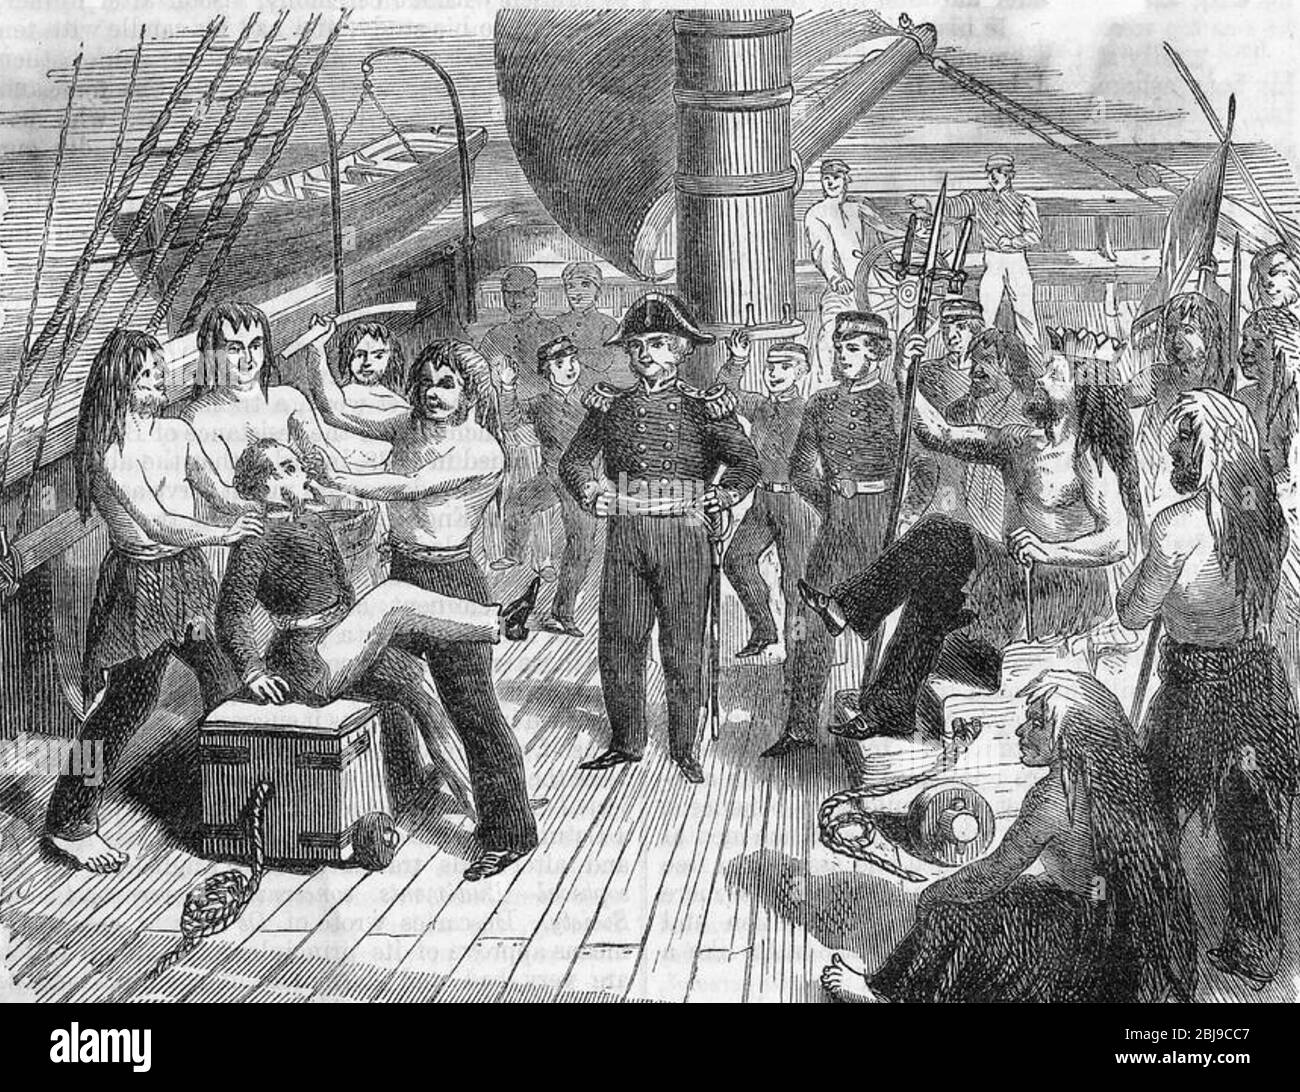 TRAVERSÉE de la cérémonie DE L'ÉQUATEUR dans les années 1840 Banque D'Images